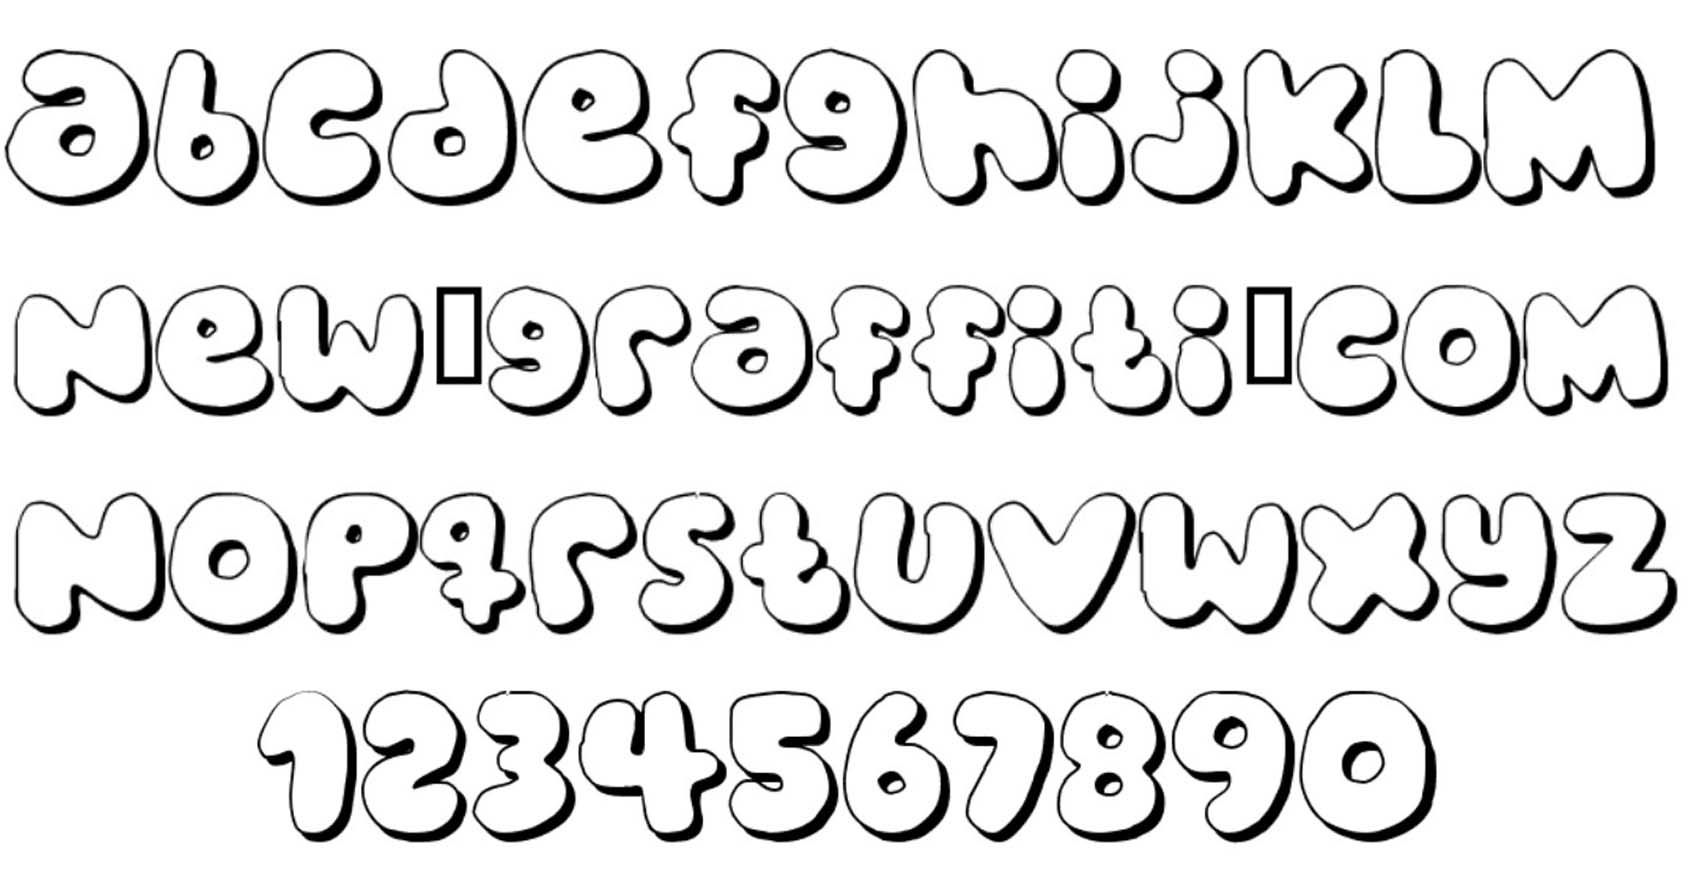 10 Cool Bubble Fonts Images Bubble Letters Alphabet Font Cool Bubble Letter Fonts And Bubble 